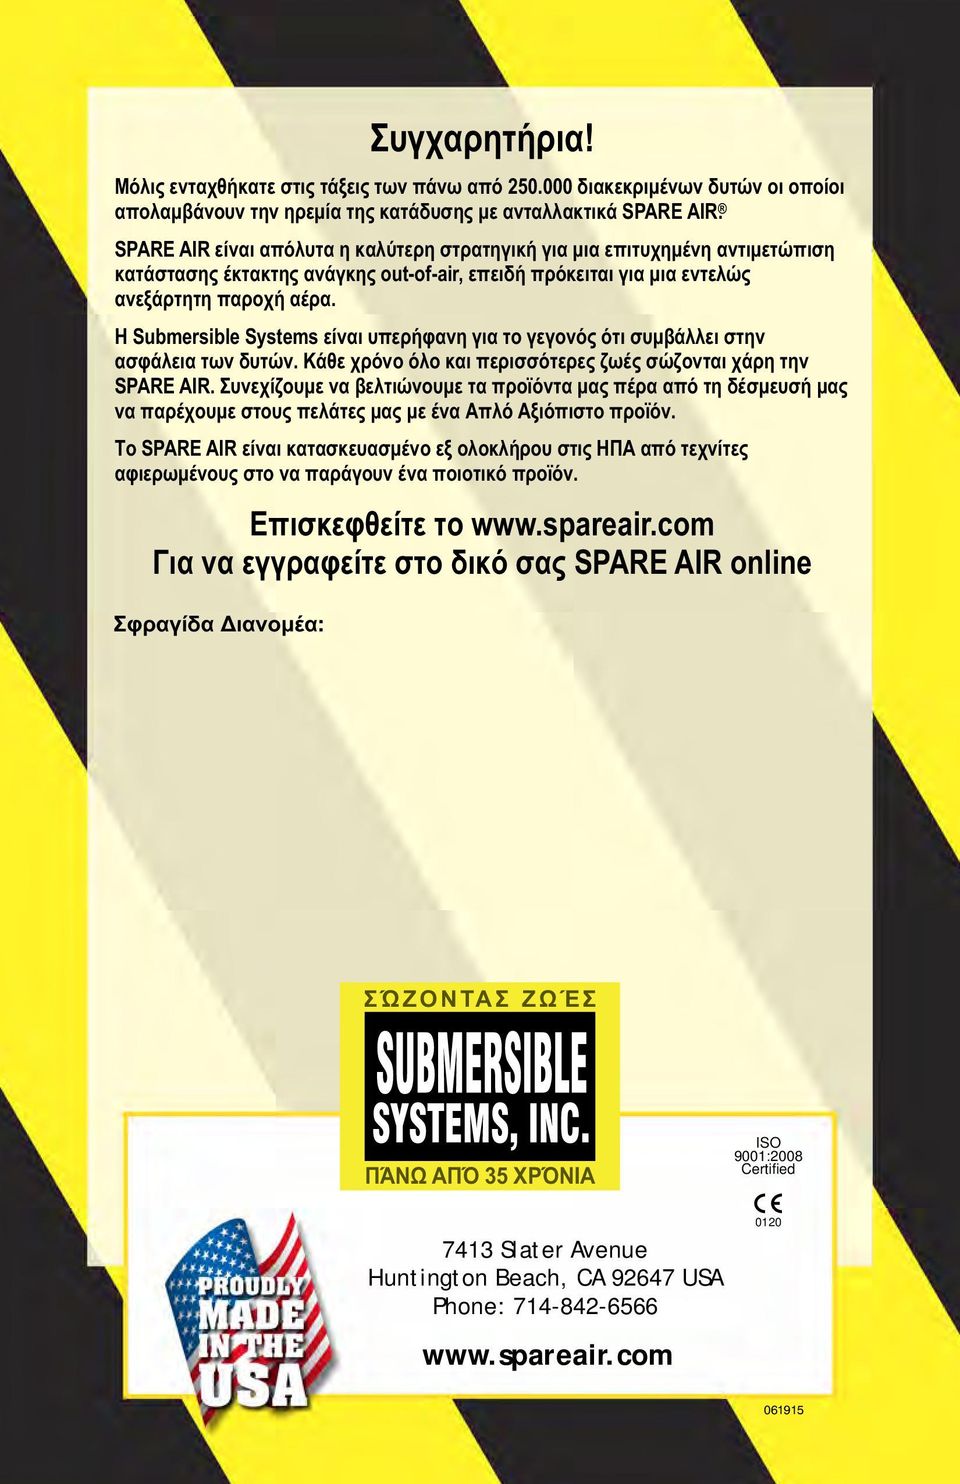 Η Submersible Systems είναι υπερήφανη για το γεγονός ότι συμβάλλει στην ασφάλεια των δυτών. Κάθε χρόνο όλο και περισσότερες ζωές σώζονται χάρη την SPARE AIR.